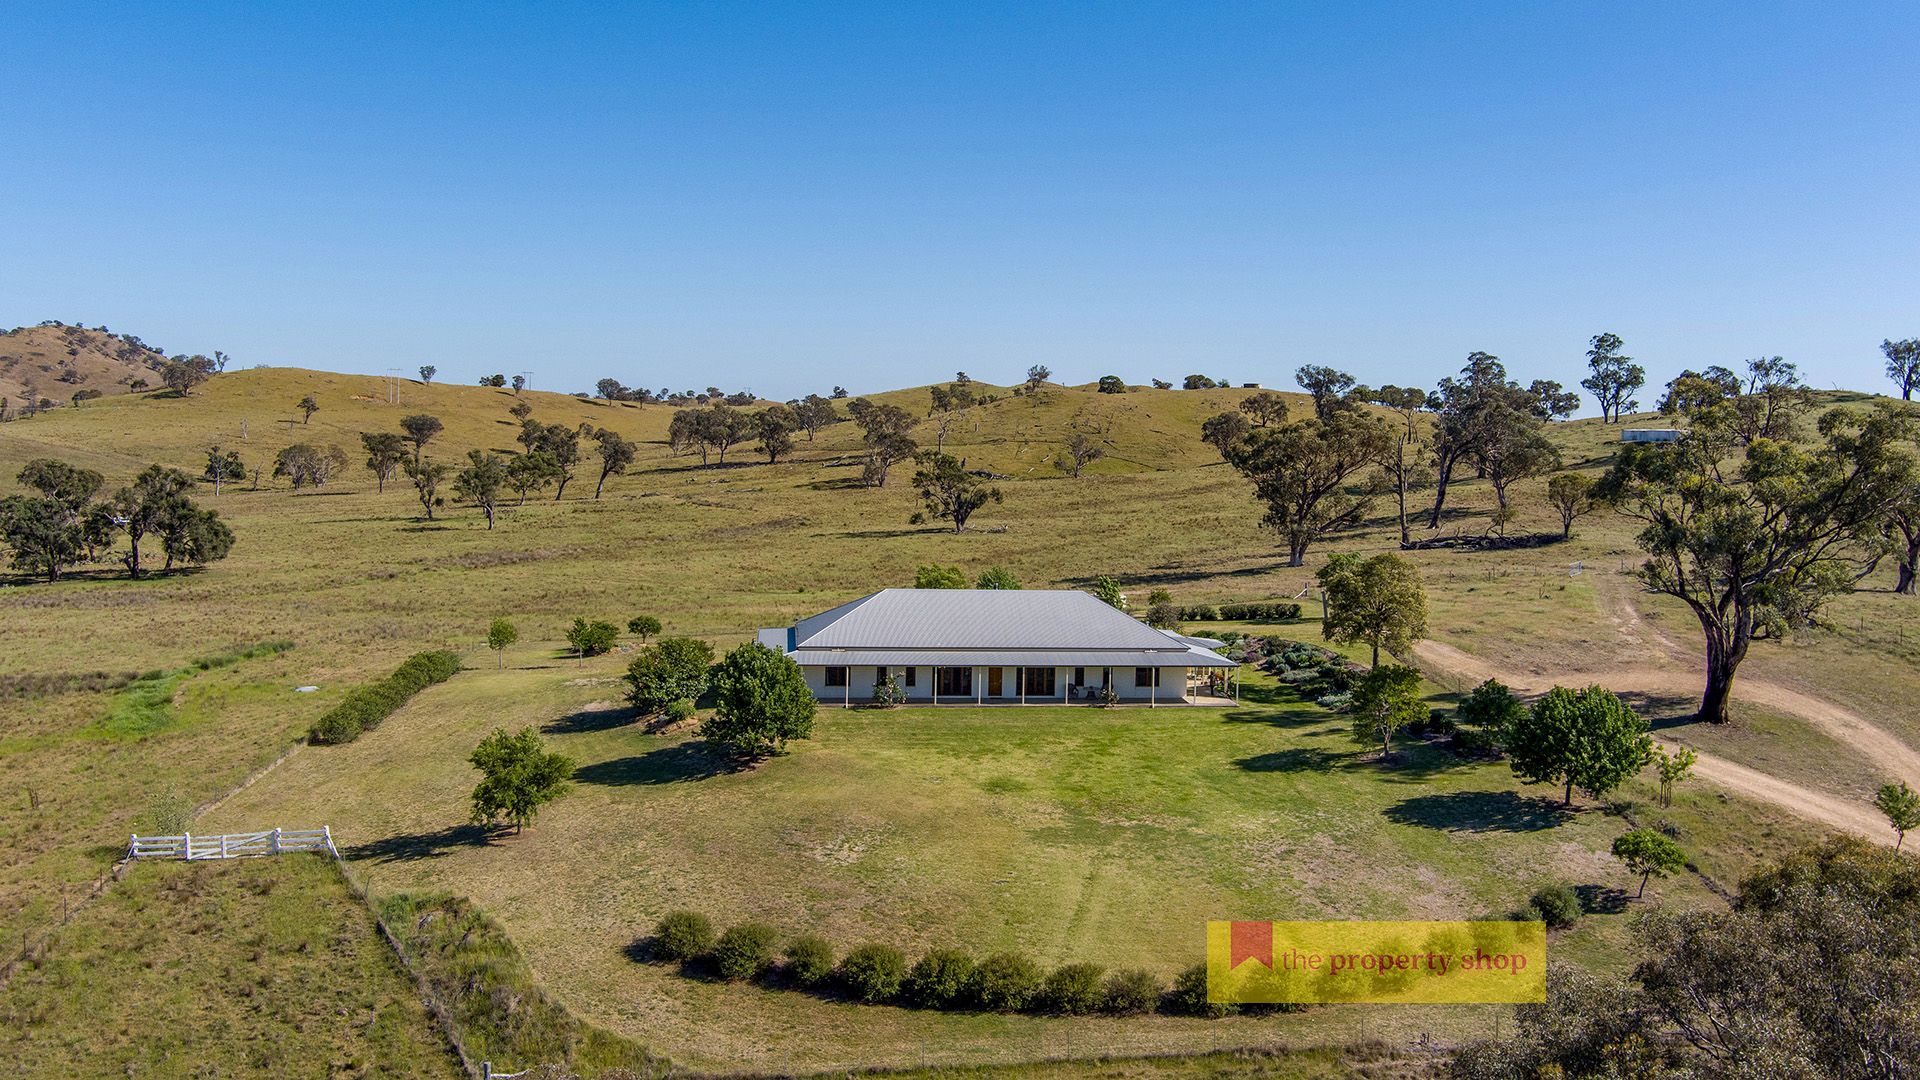 5 bedrooms Rural in 1691 Castlereagh Highway MUDGEE NSW, 2850